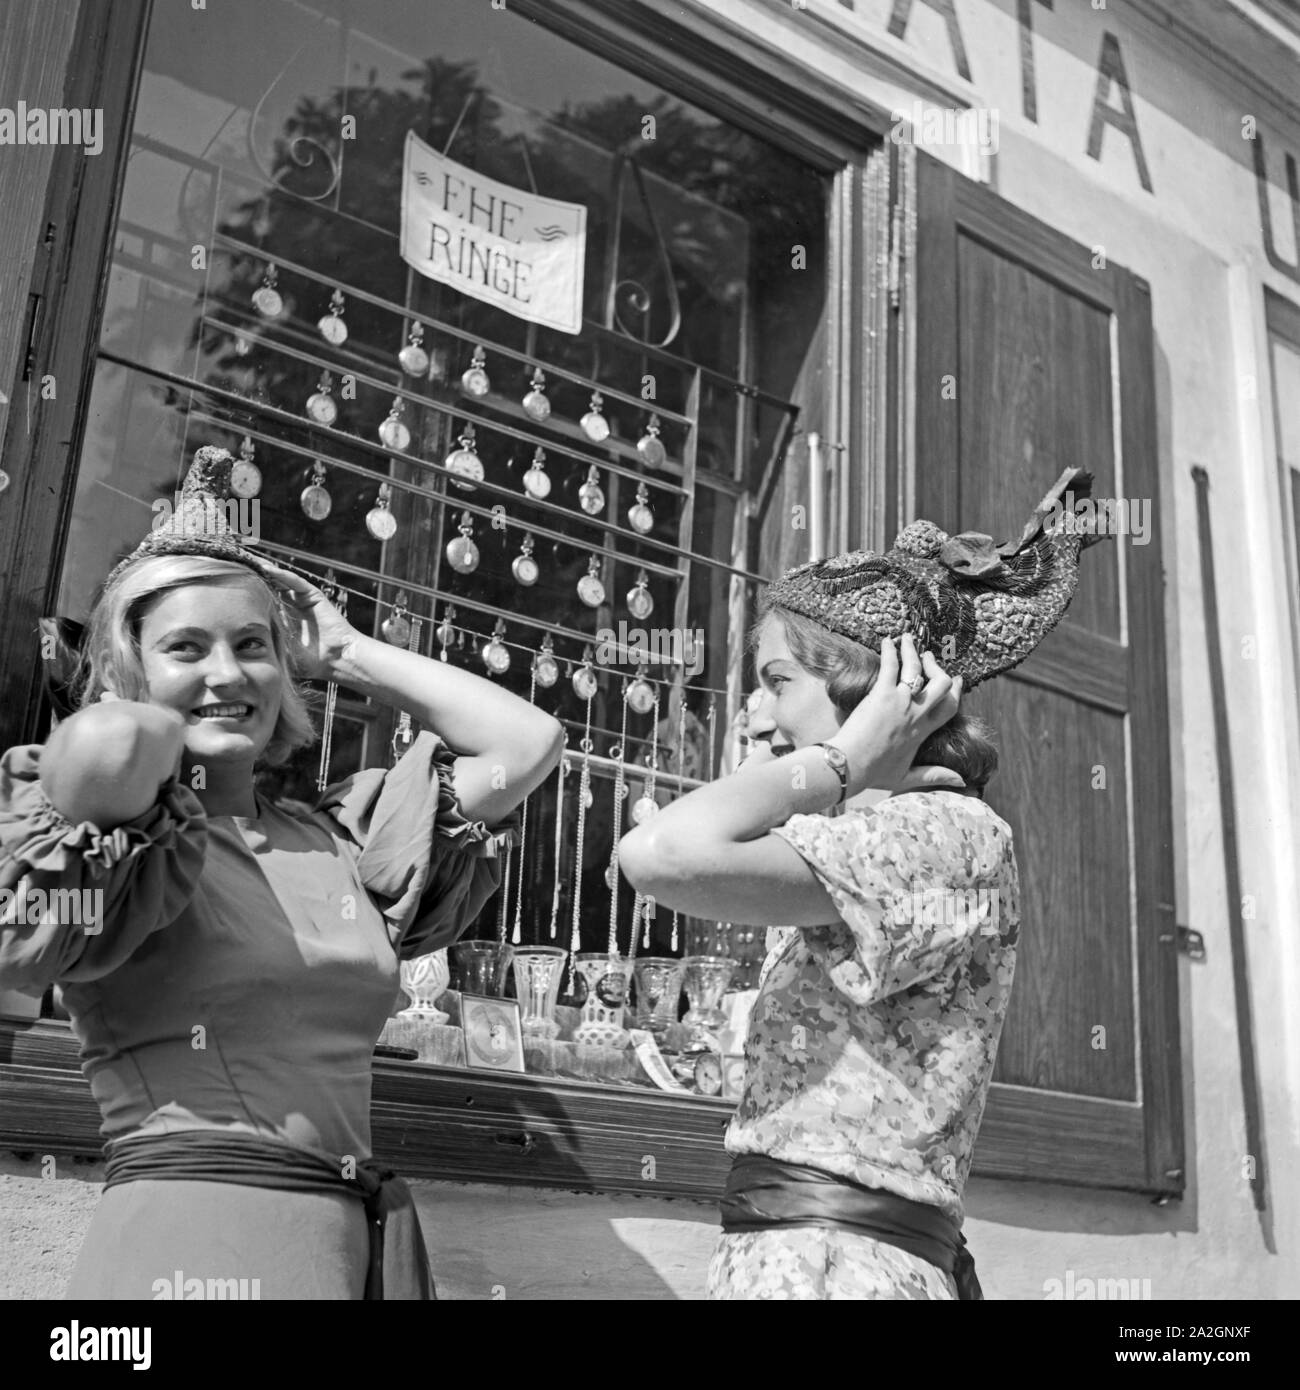 Zwei junge Frauen haben einen neuen Hut Referenzen und sehen Sie sich in der Spiegelung eines Schaufensters ein, Österreich 1930er Jahre. Zwei junge Frauen gekauft neue Hüte und im Spiegel eines shop Fenster überprüfen, Österreich 1930. Stockfoto